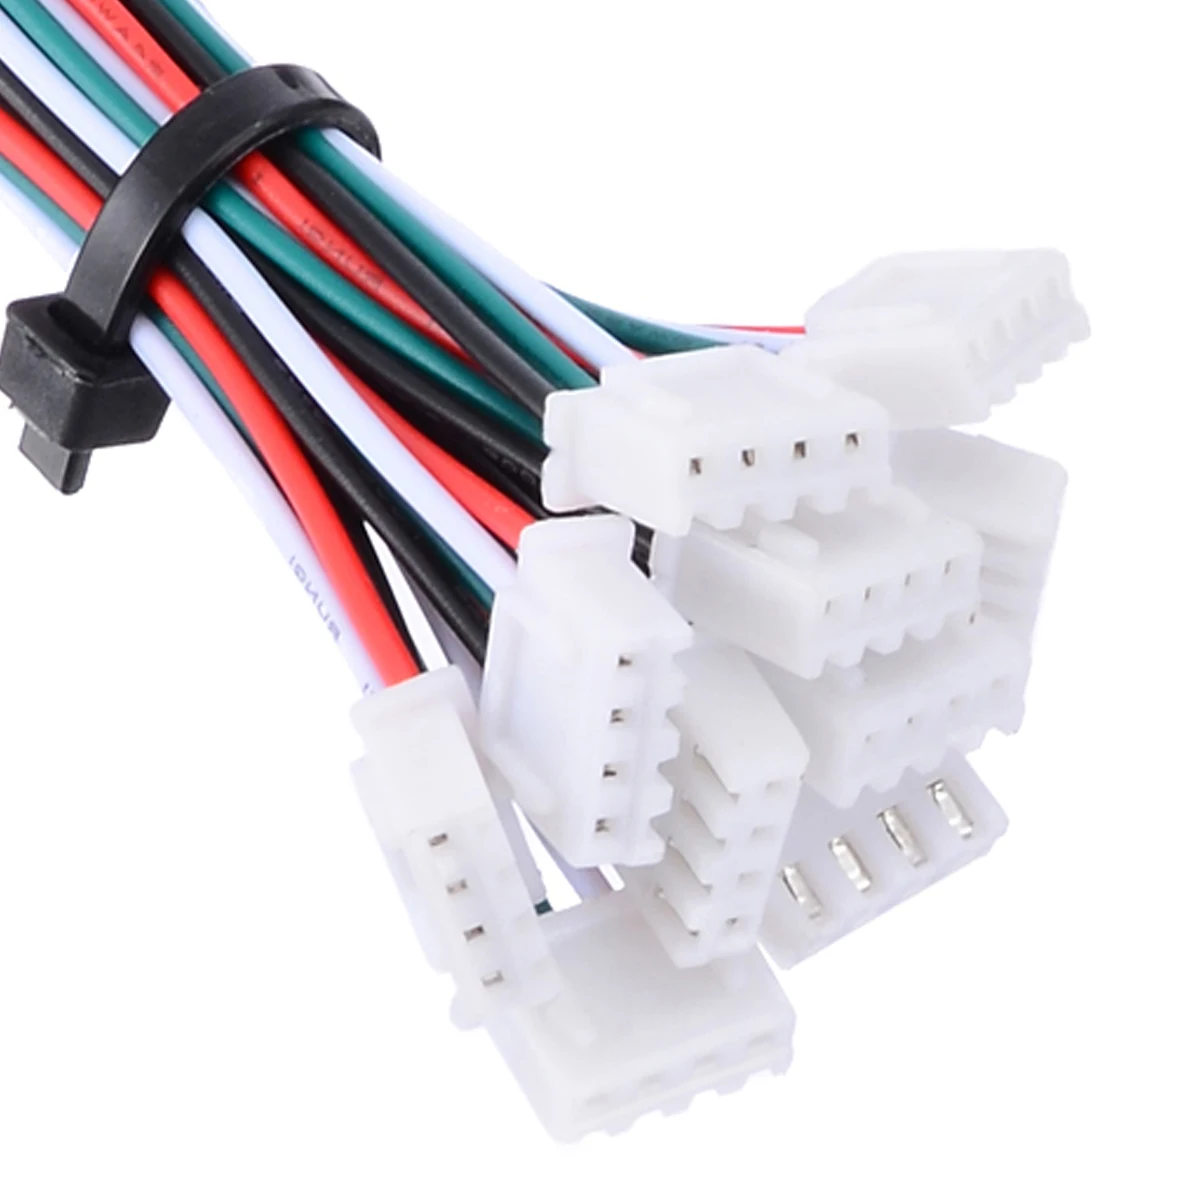 10 juegos mini micro JST xh-2.54 24awg 2-pin enchufe conexión con cables 150mm kg 